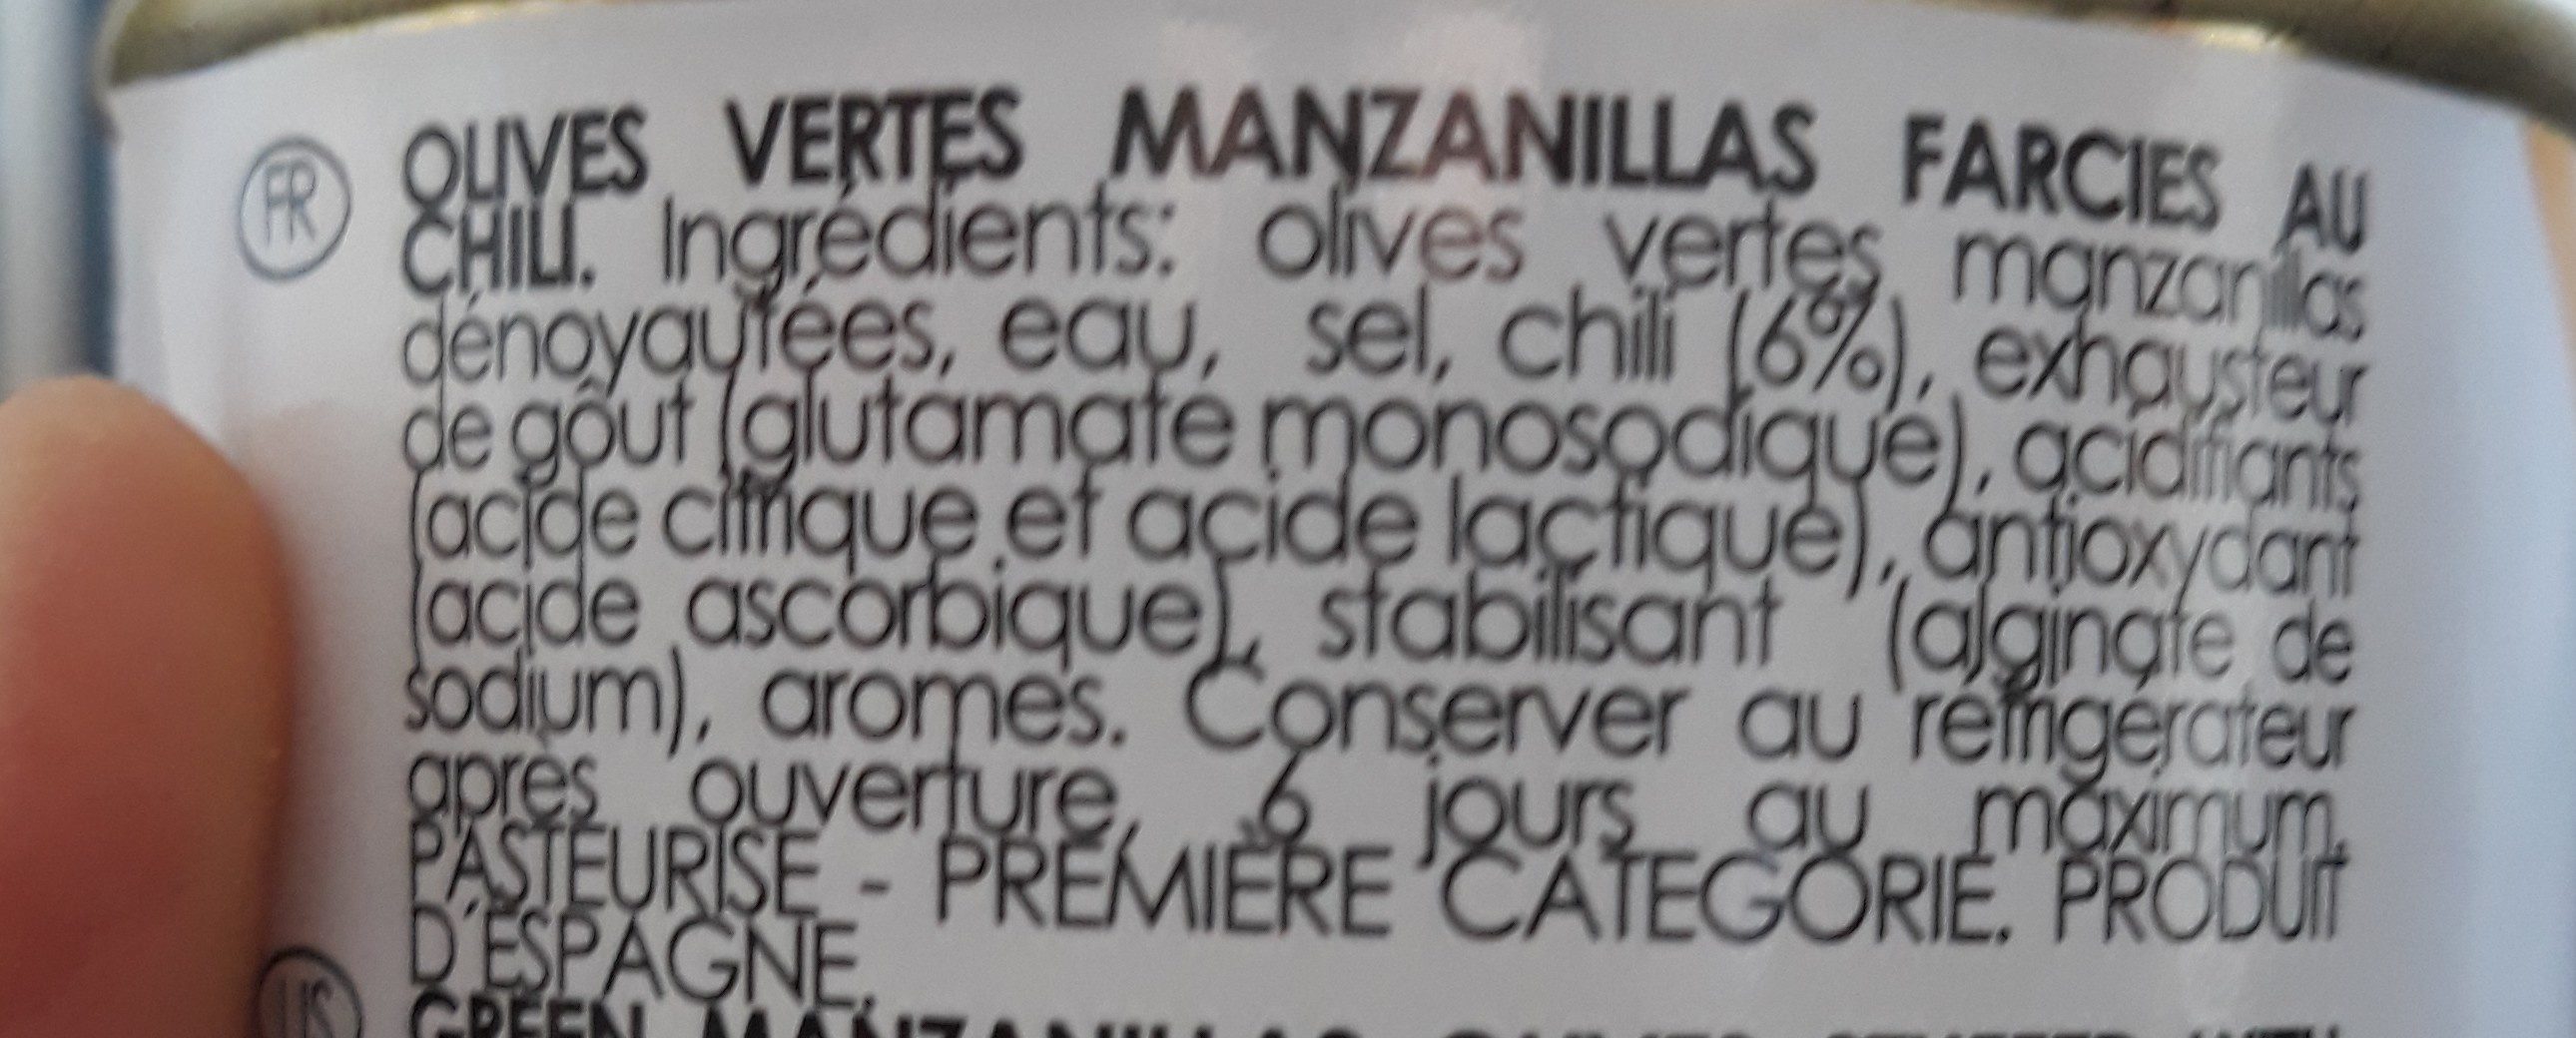 Olives vertes chili - Ingrédients